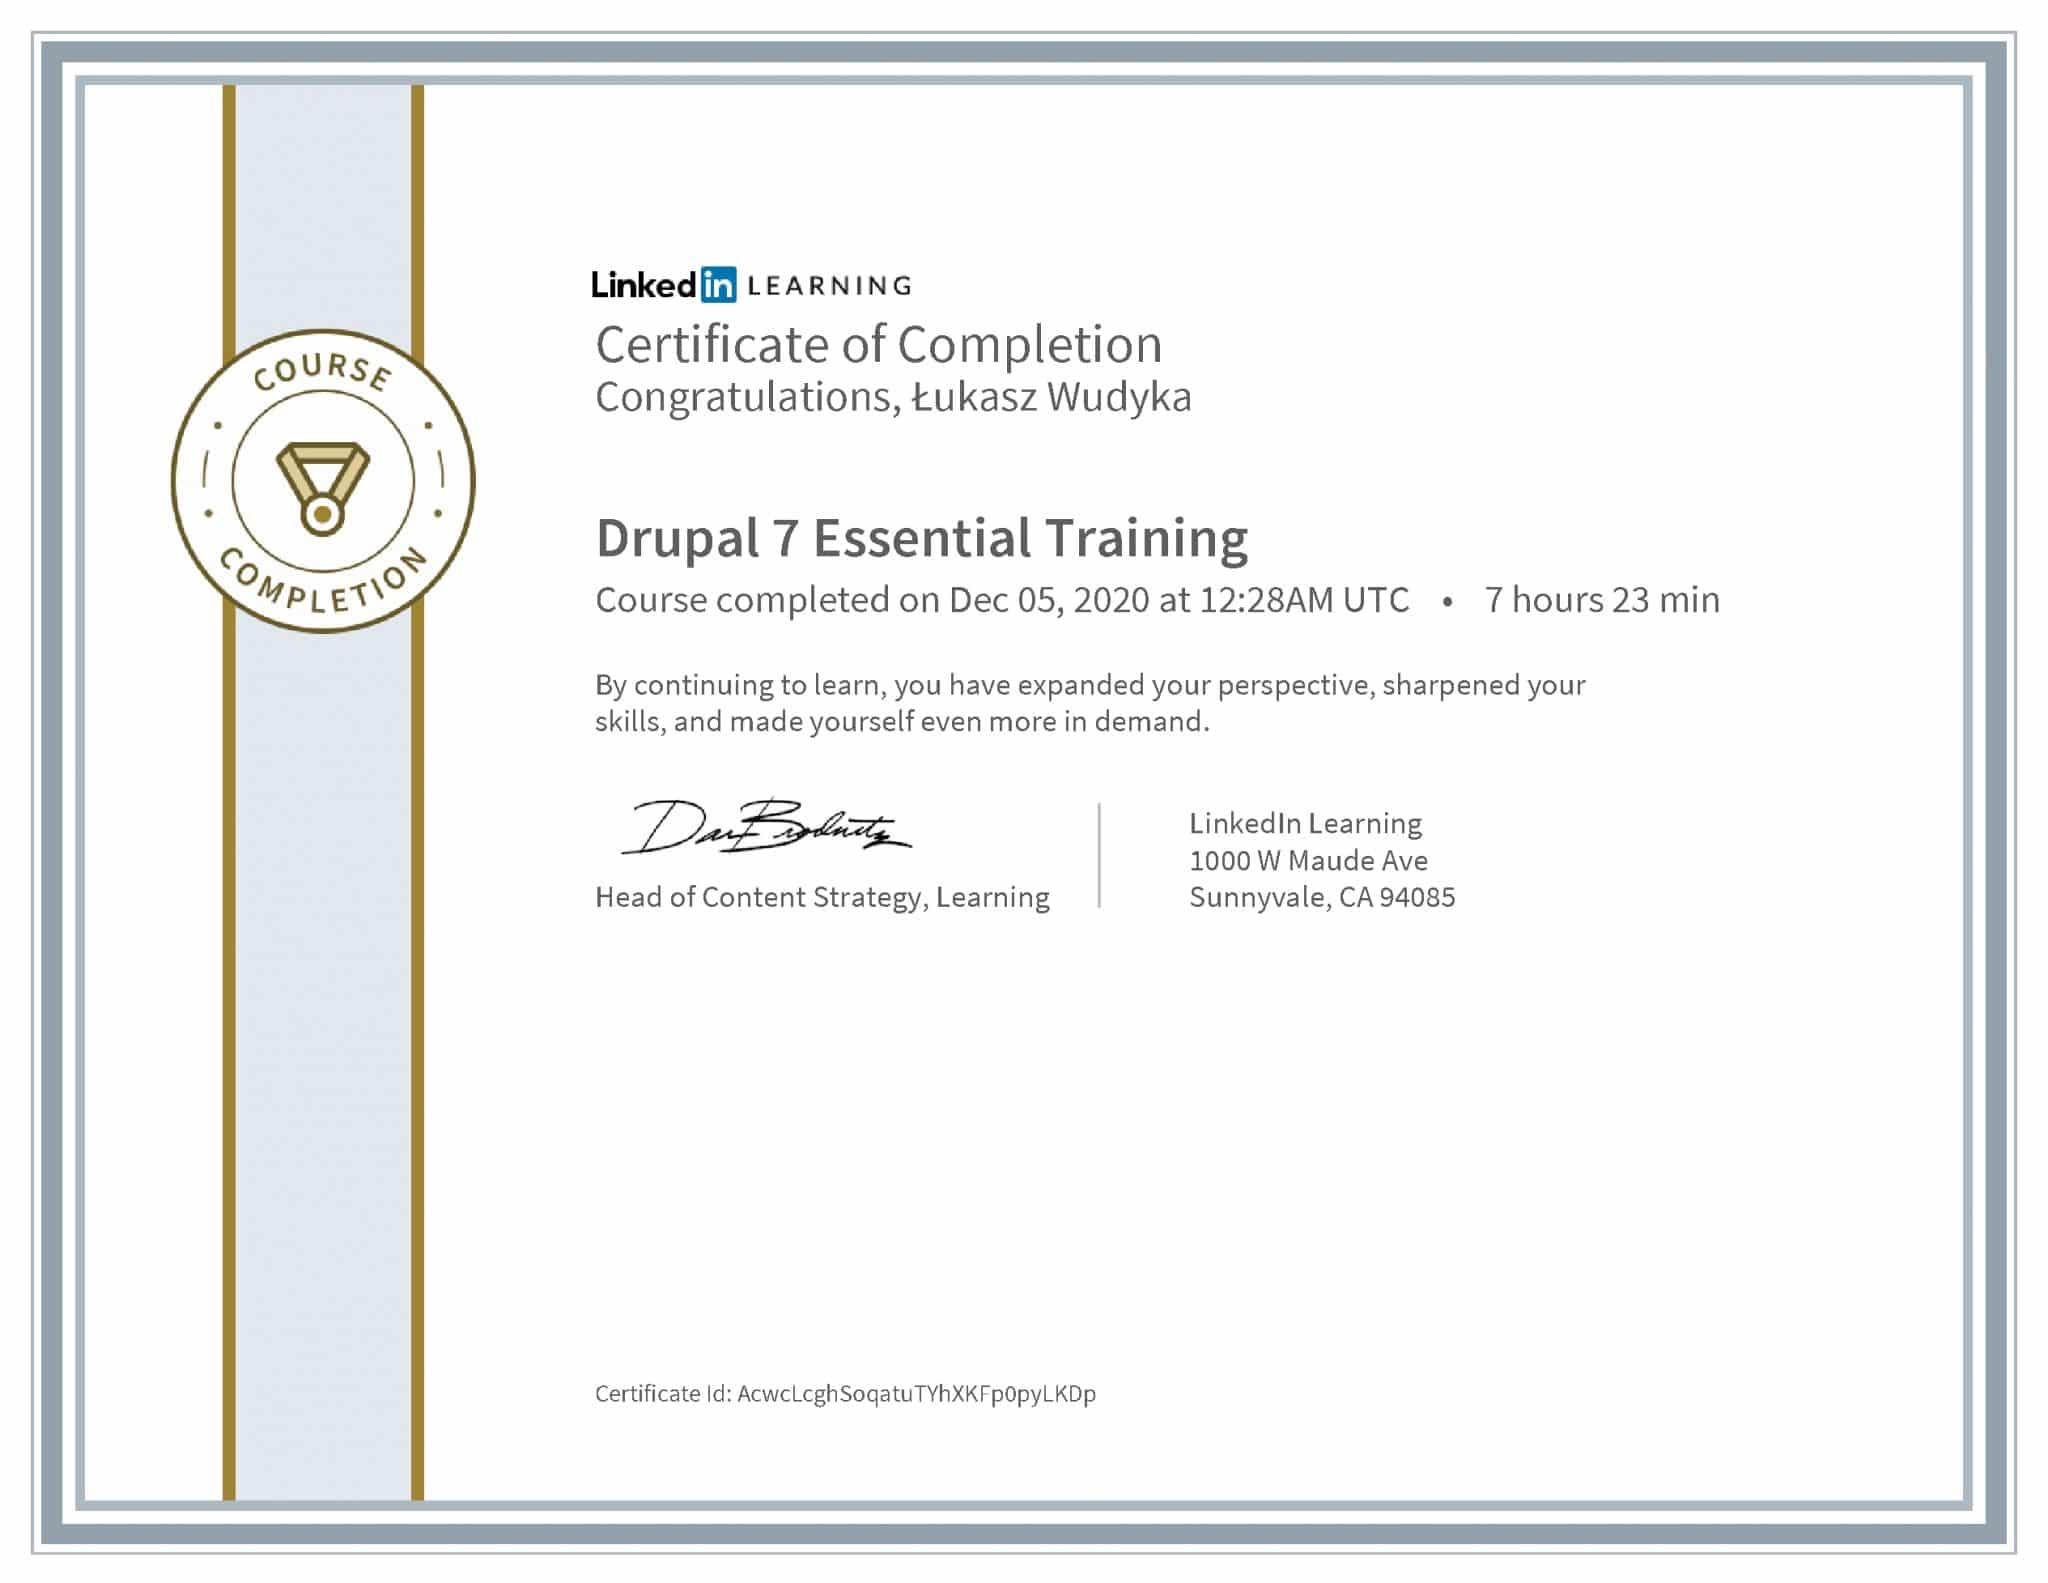 Łukasz Wudyka certyfikat LinkedIn Drupal 7 Essential Training